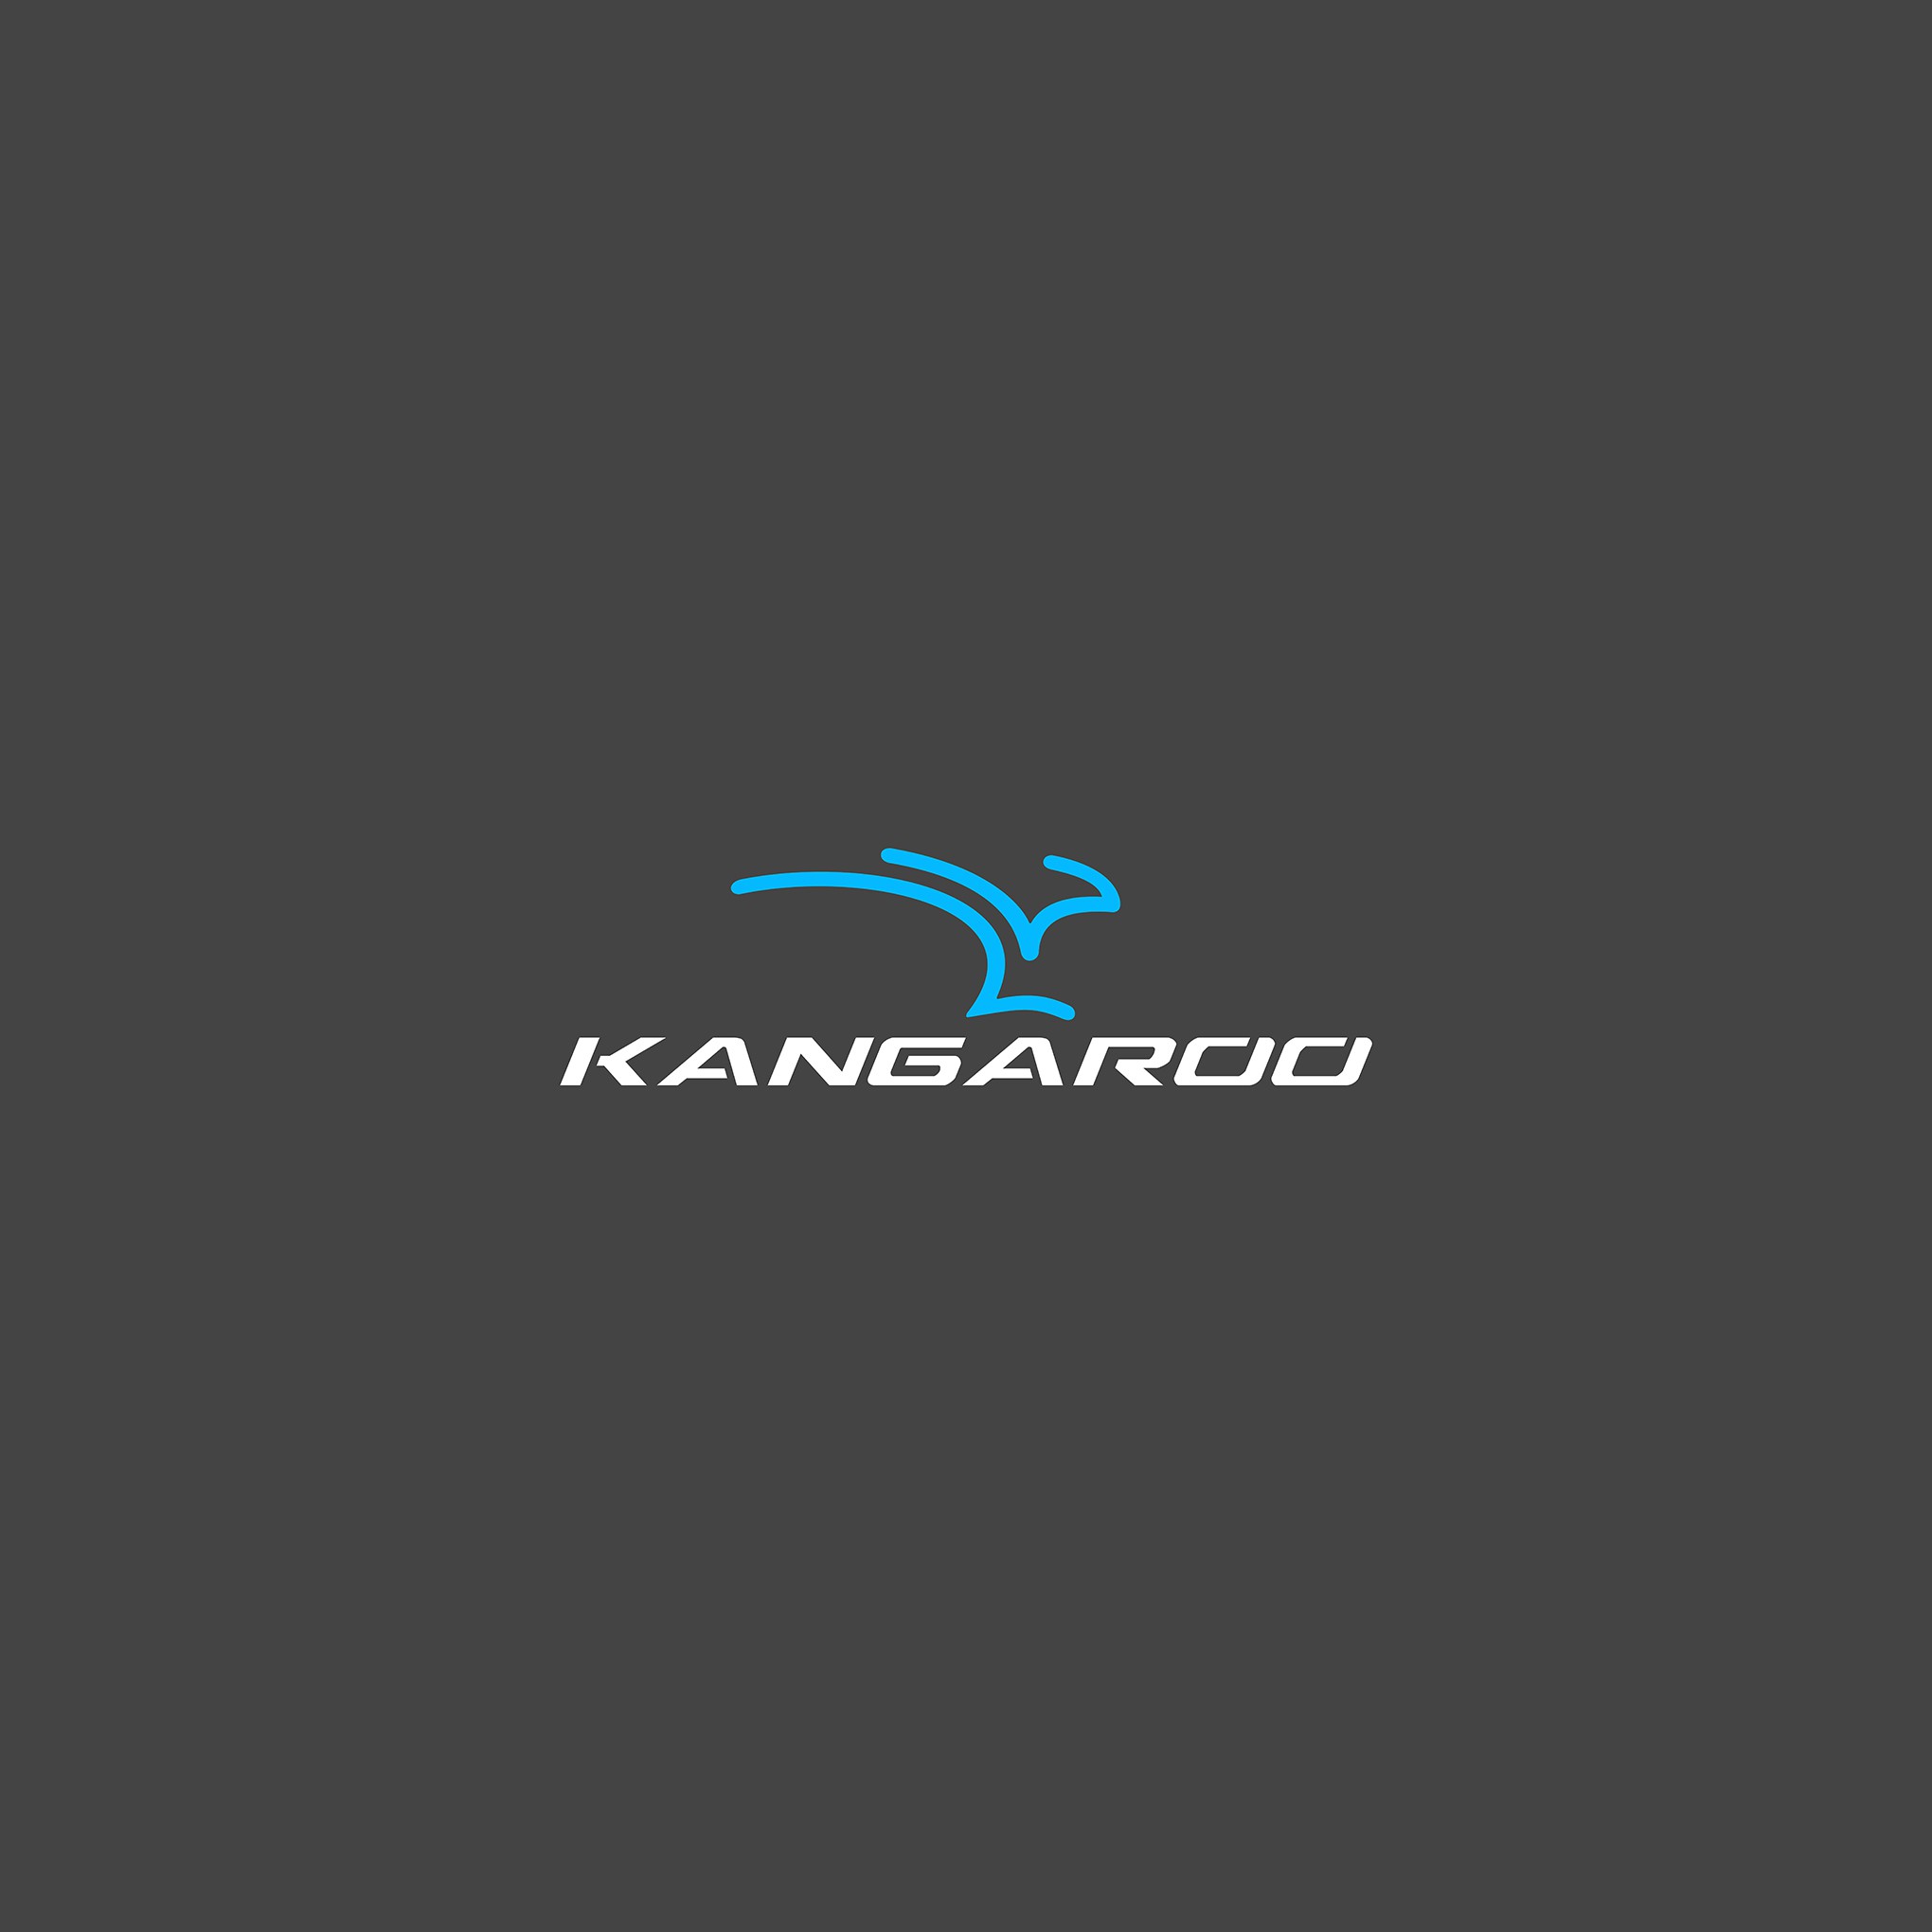 Kangaroo branding graphic design logo